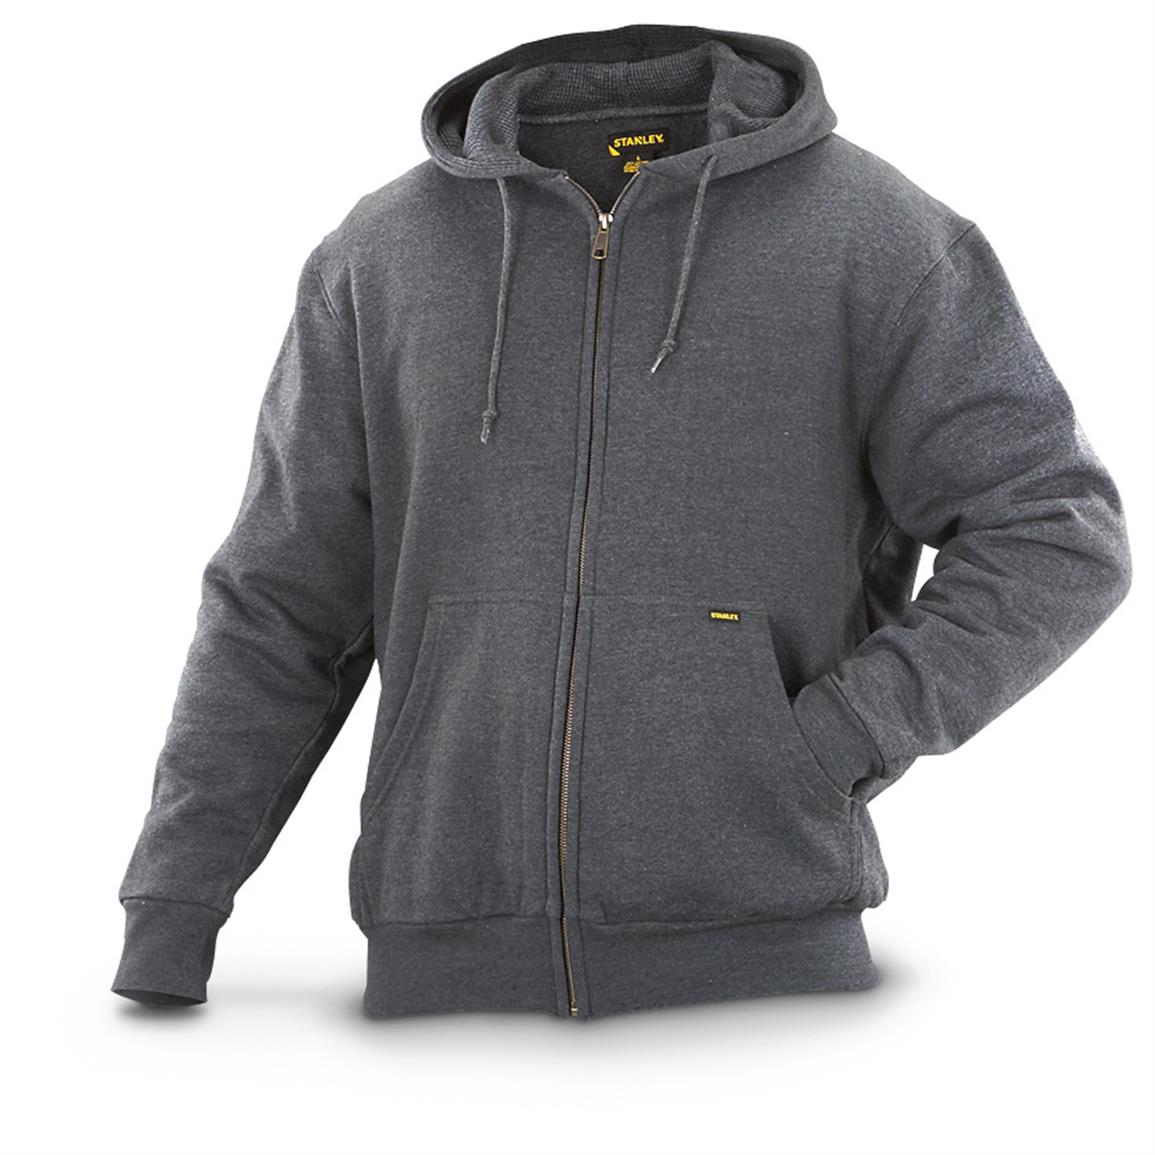 Stanley Thermal-lined Full-zip Hooded Sweatshirt - 616563, Sweatshirts ...